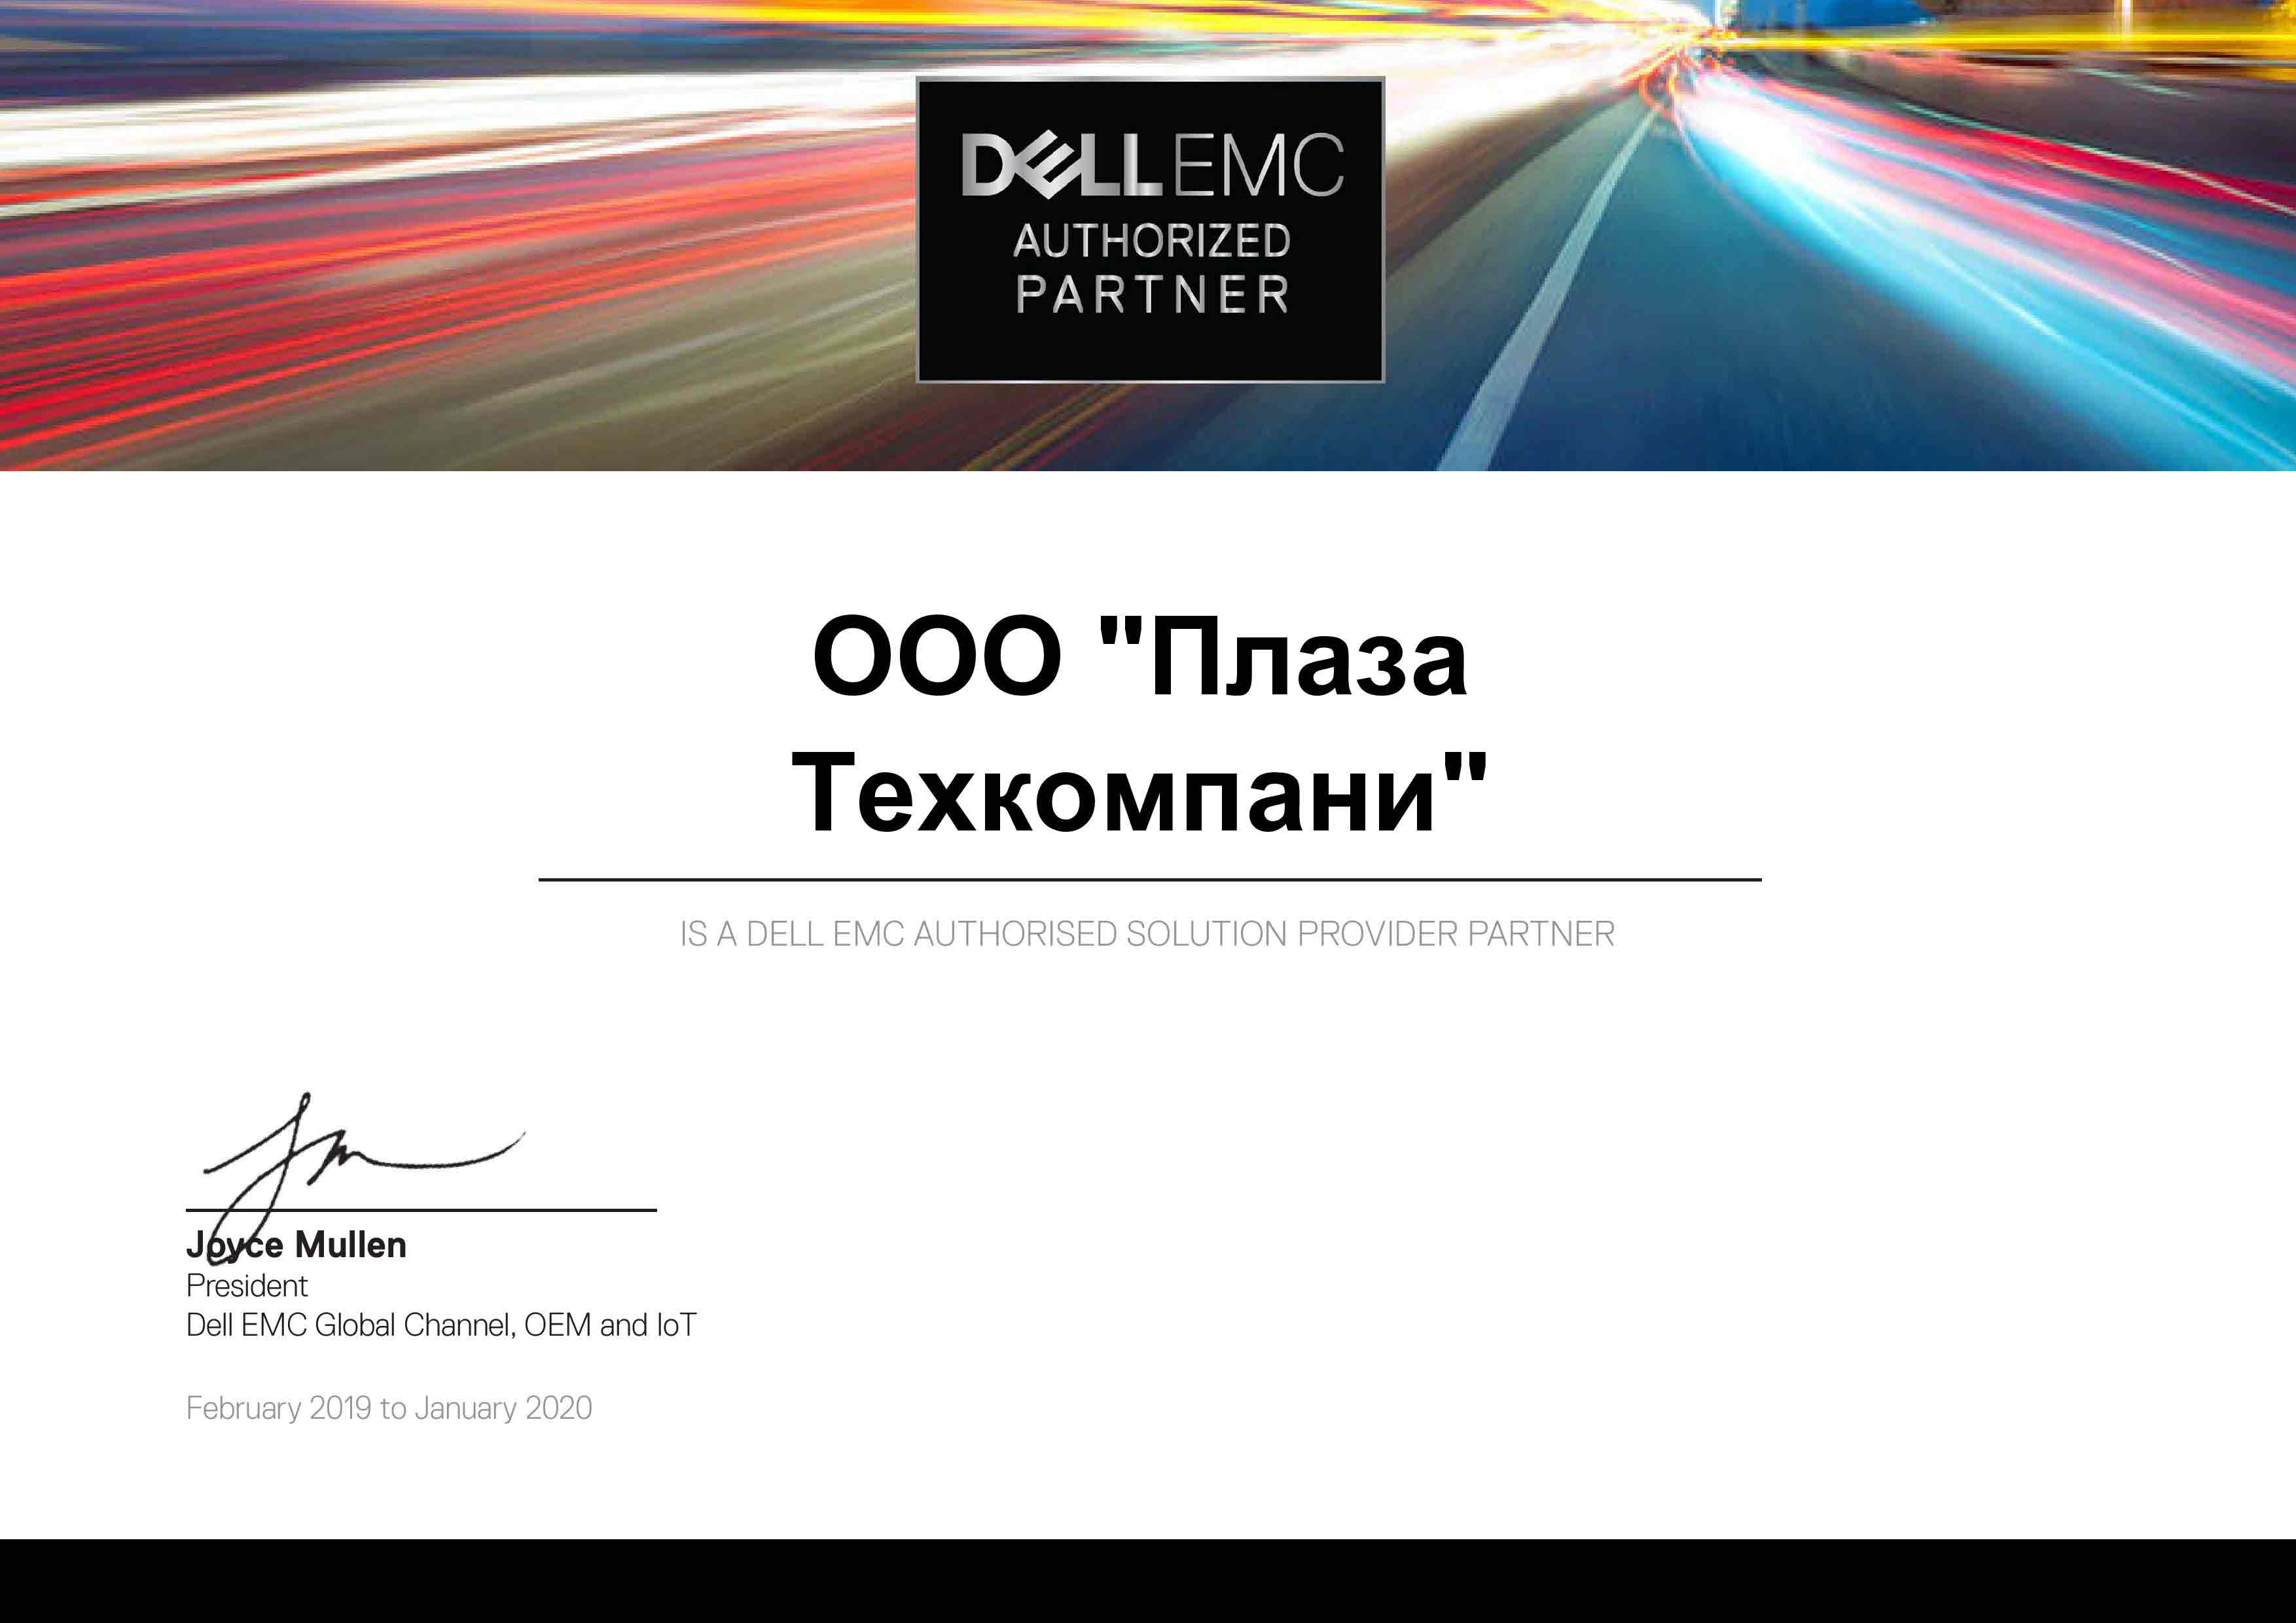 Поставщик решений | Официальные поставщики Dell Dell EMC Partner Certificate 2019 - 2020 Registered AUTHORIZED RESELLER LETTER